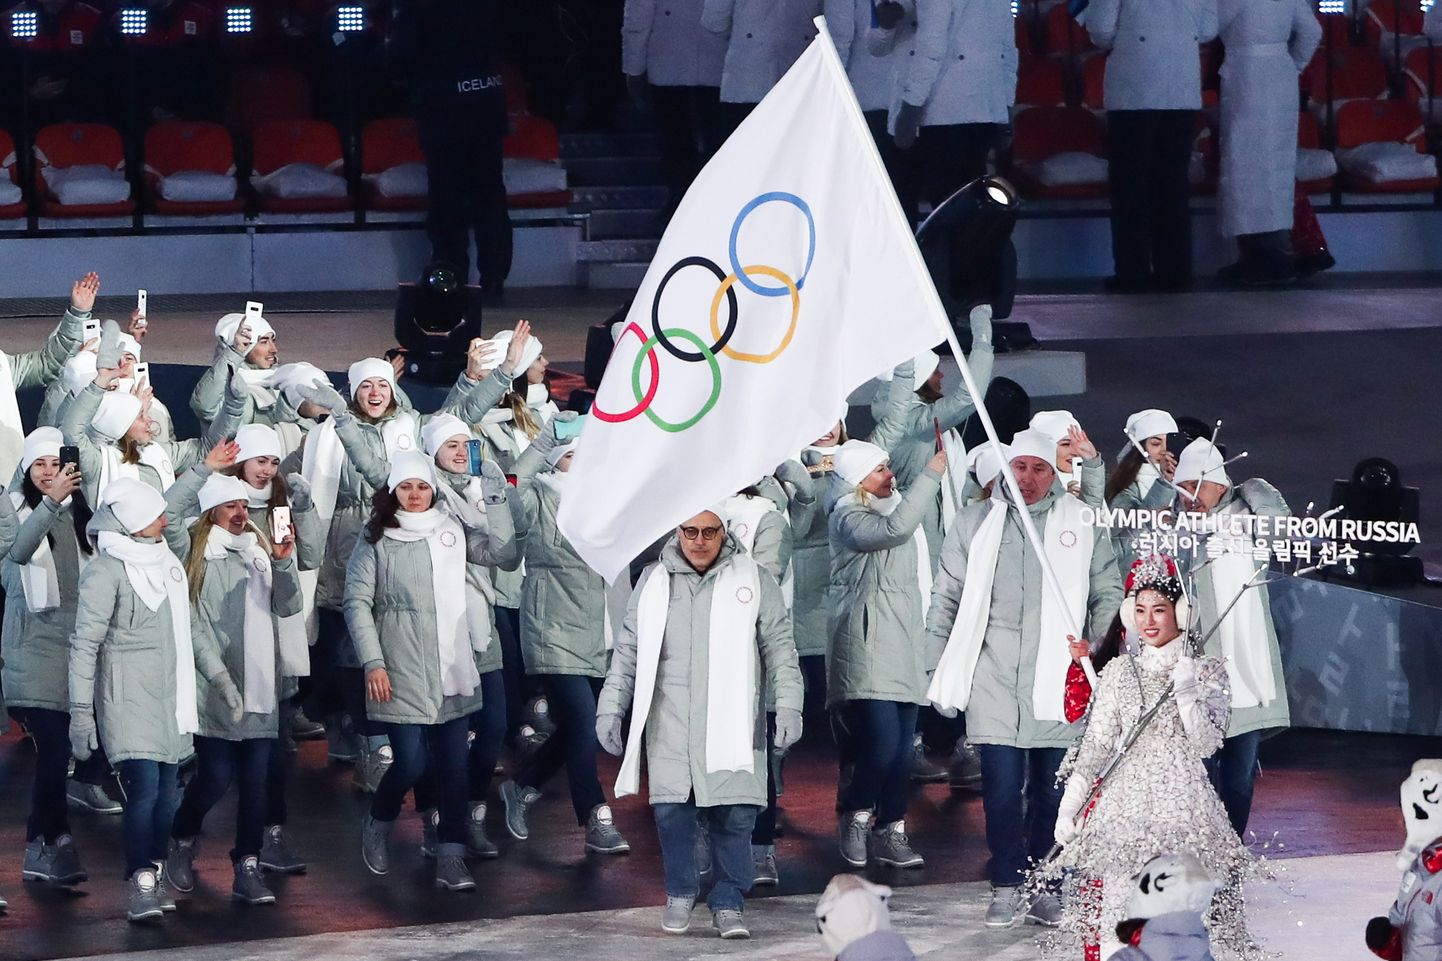 Venemaa sportlased marssisid avatseremoonial staadionile olümpia lipu all. Lõputseremoonial näeme võib-olla juba Venemaa enda lippu.